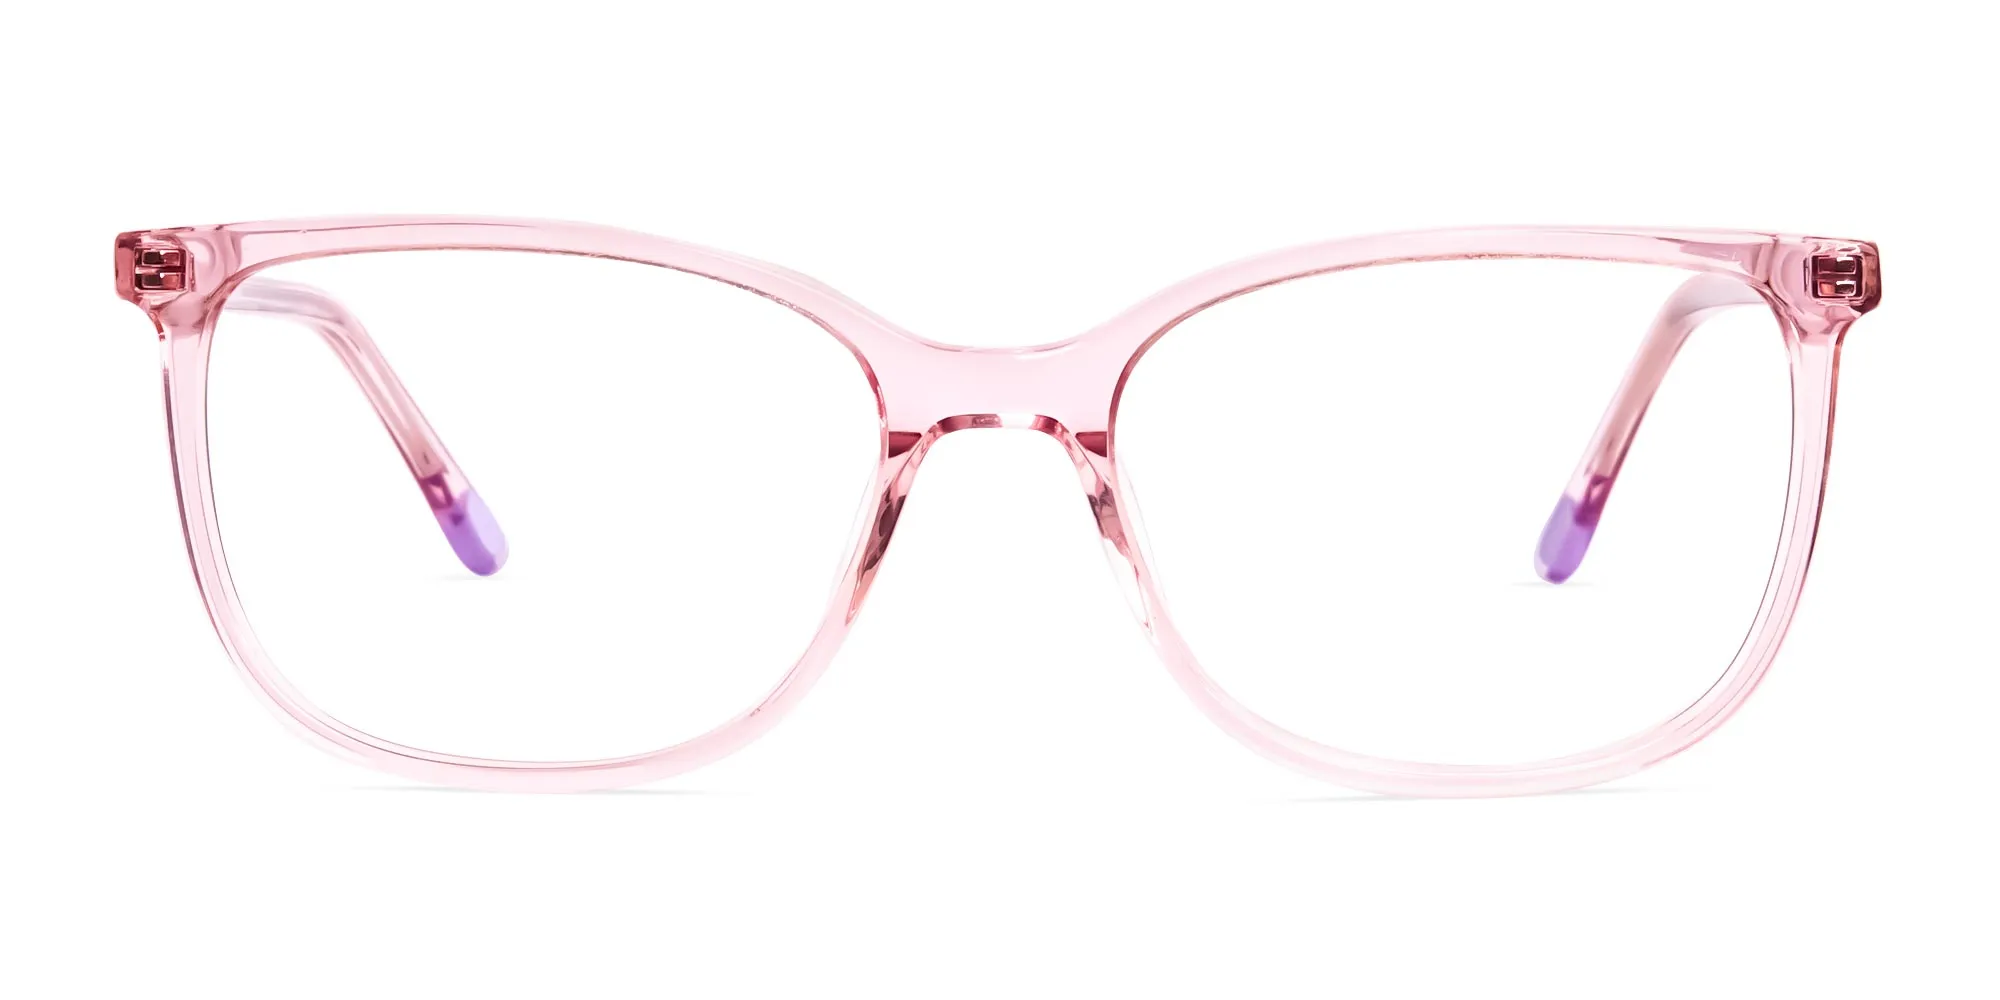 crystal clear and transparent pink wayfarer cat eye glasses frames